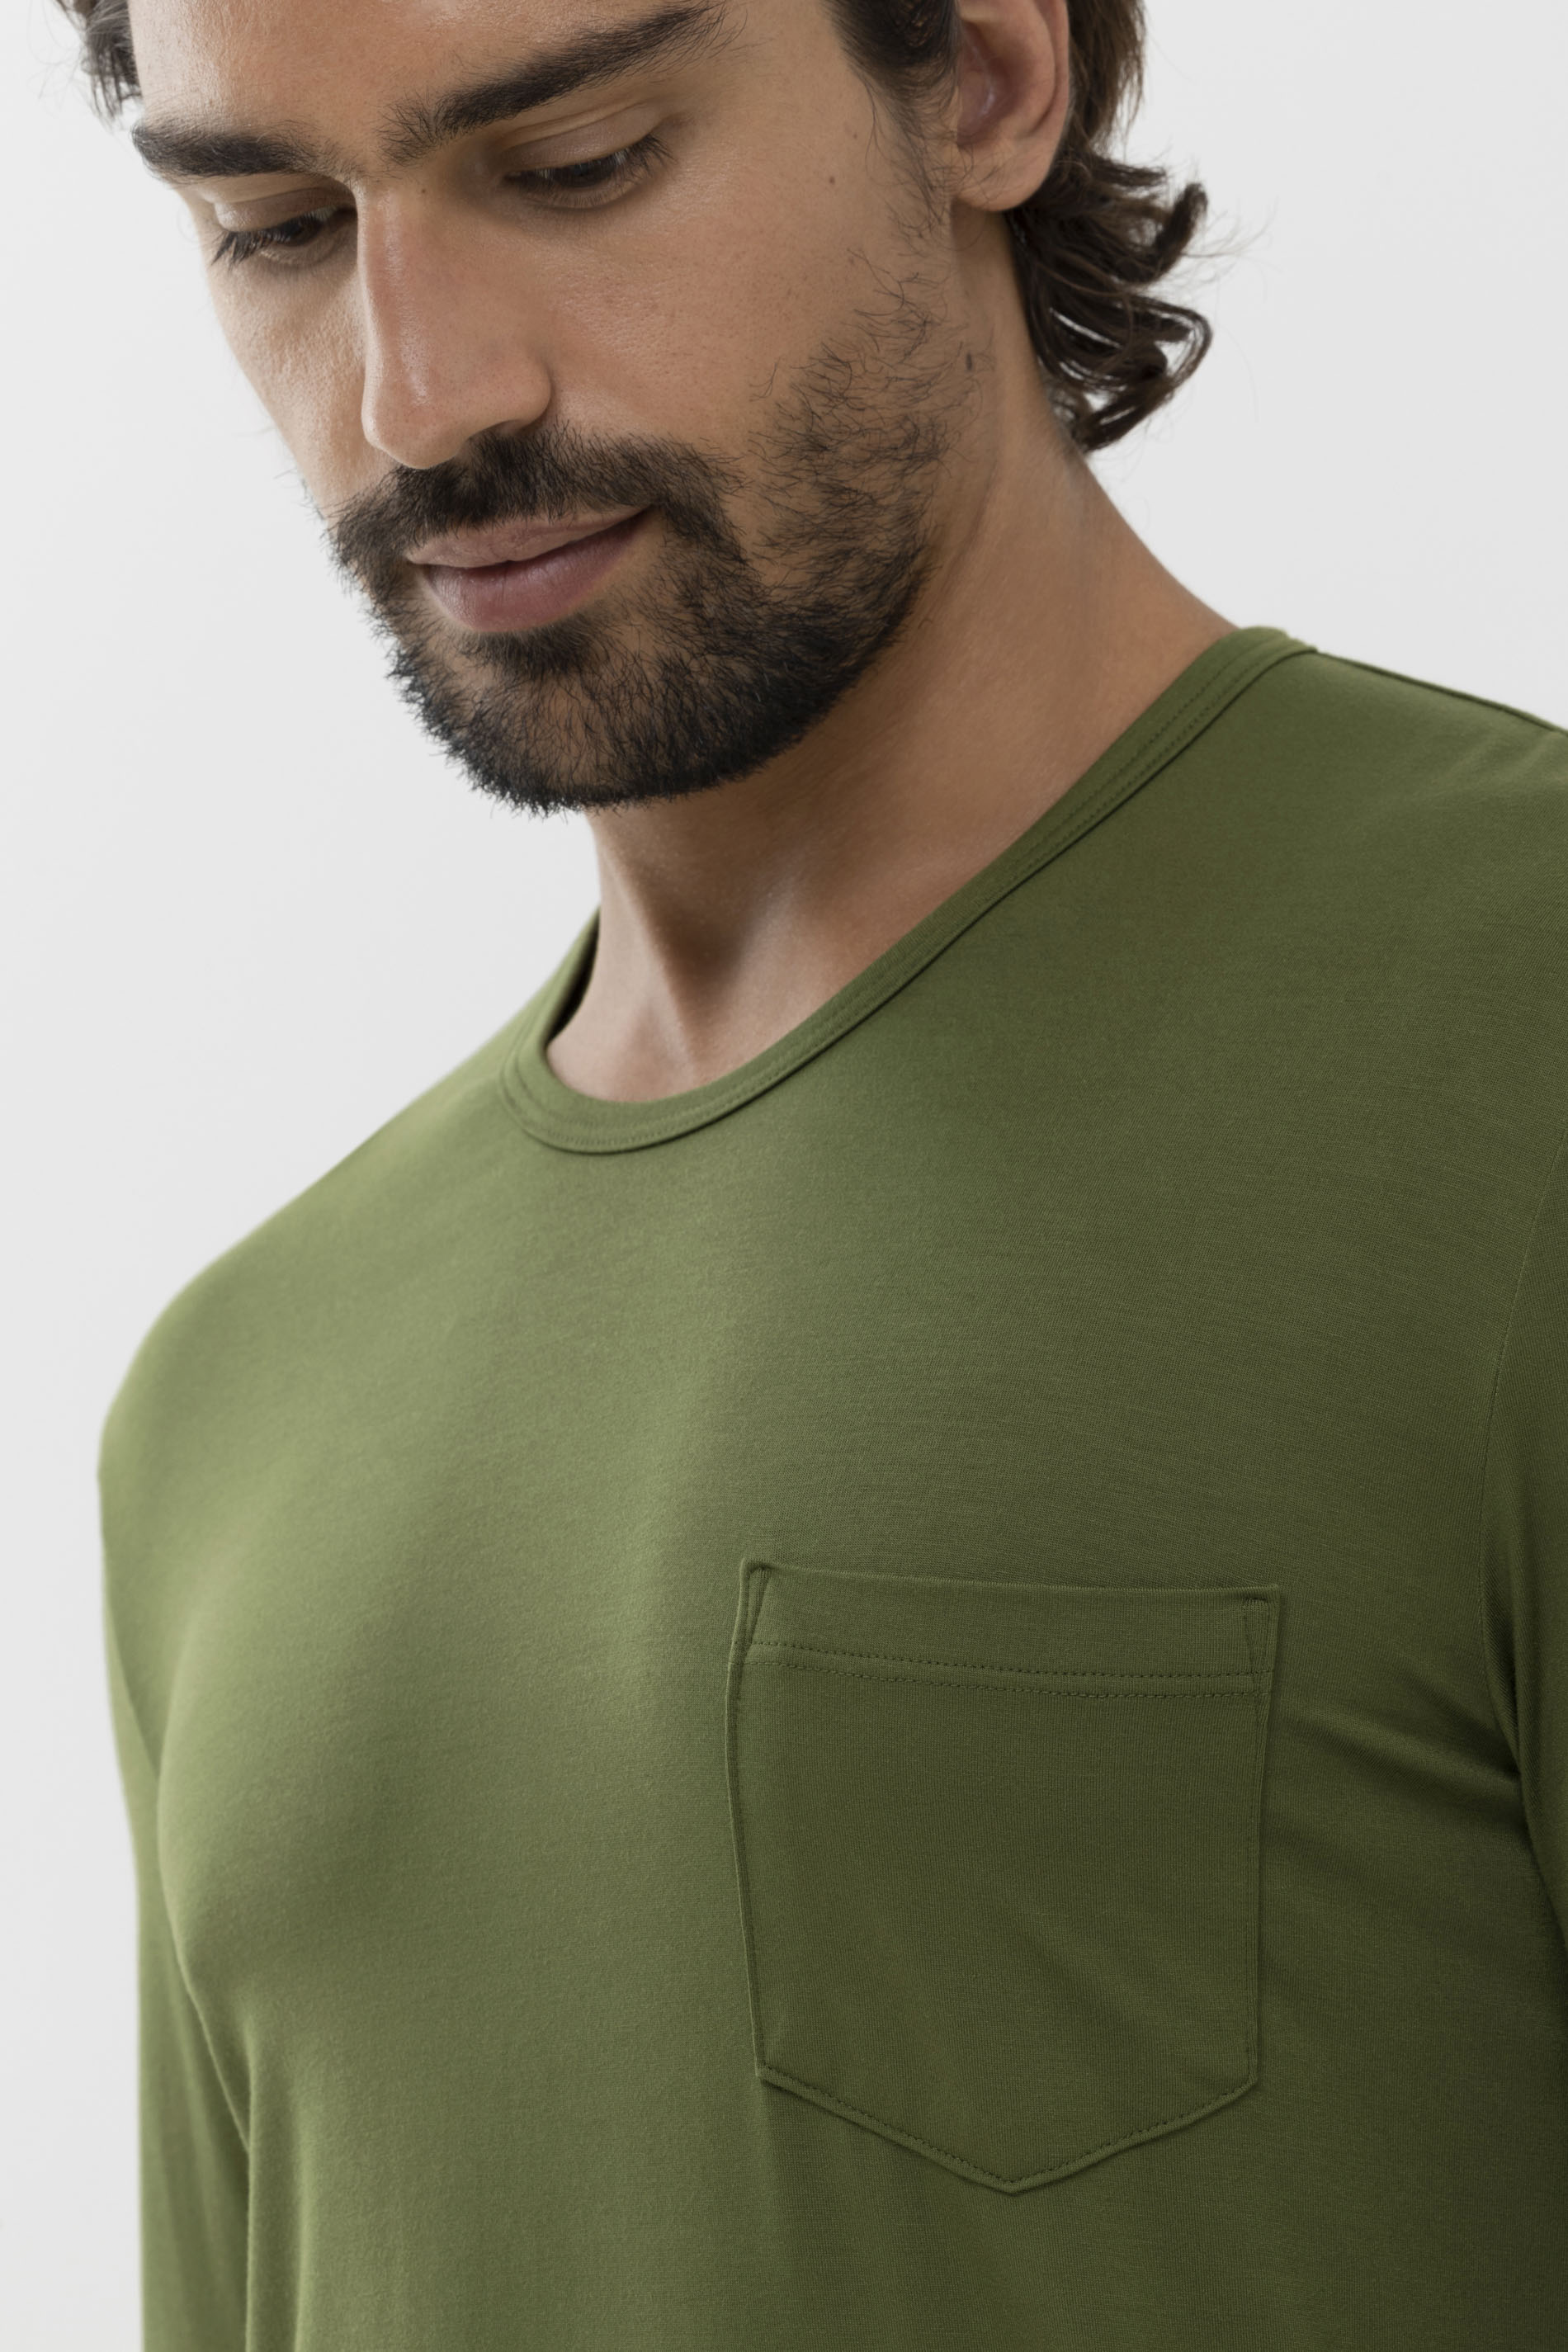 Langarm-Shirt Serie Jefferson Modal Detailansicht 01 | mey®